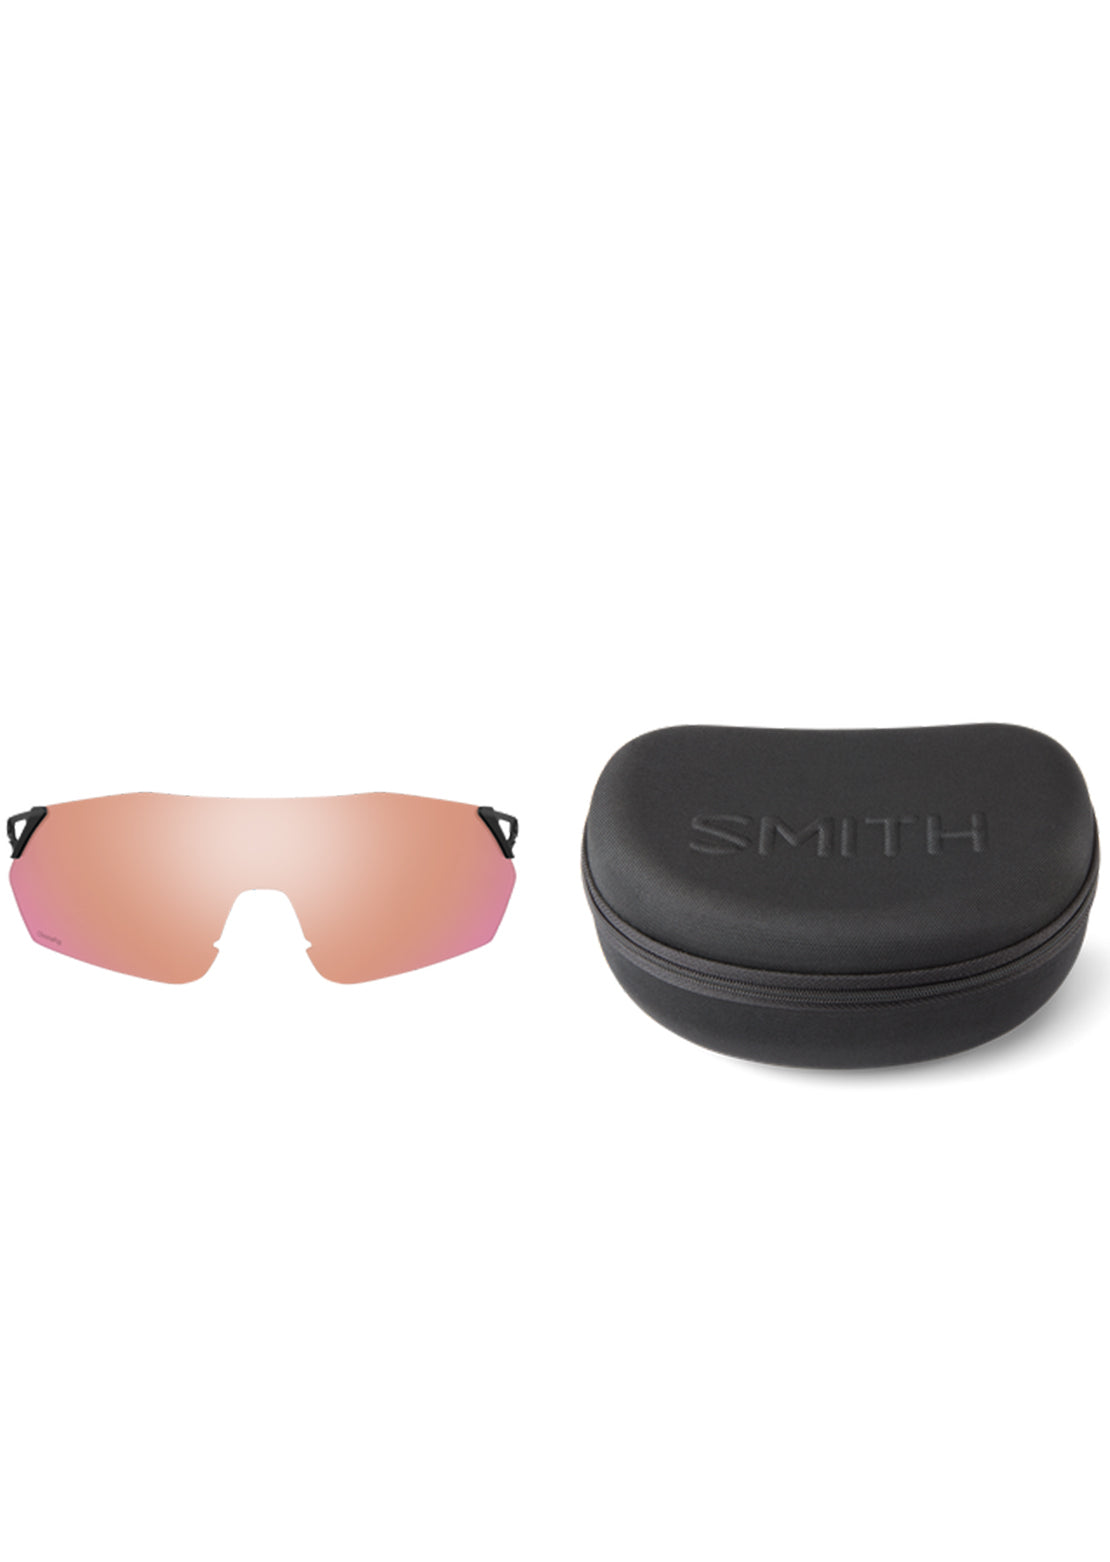 Smith Ruckus Bike Sunglasses Matte White/ChromaPop Black